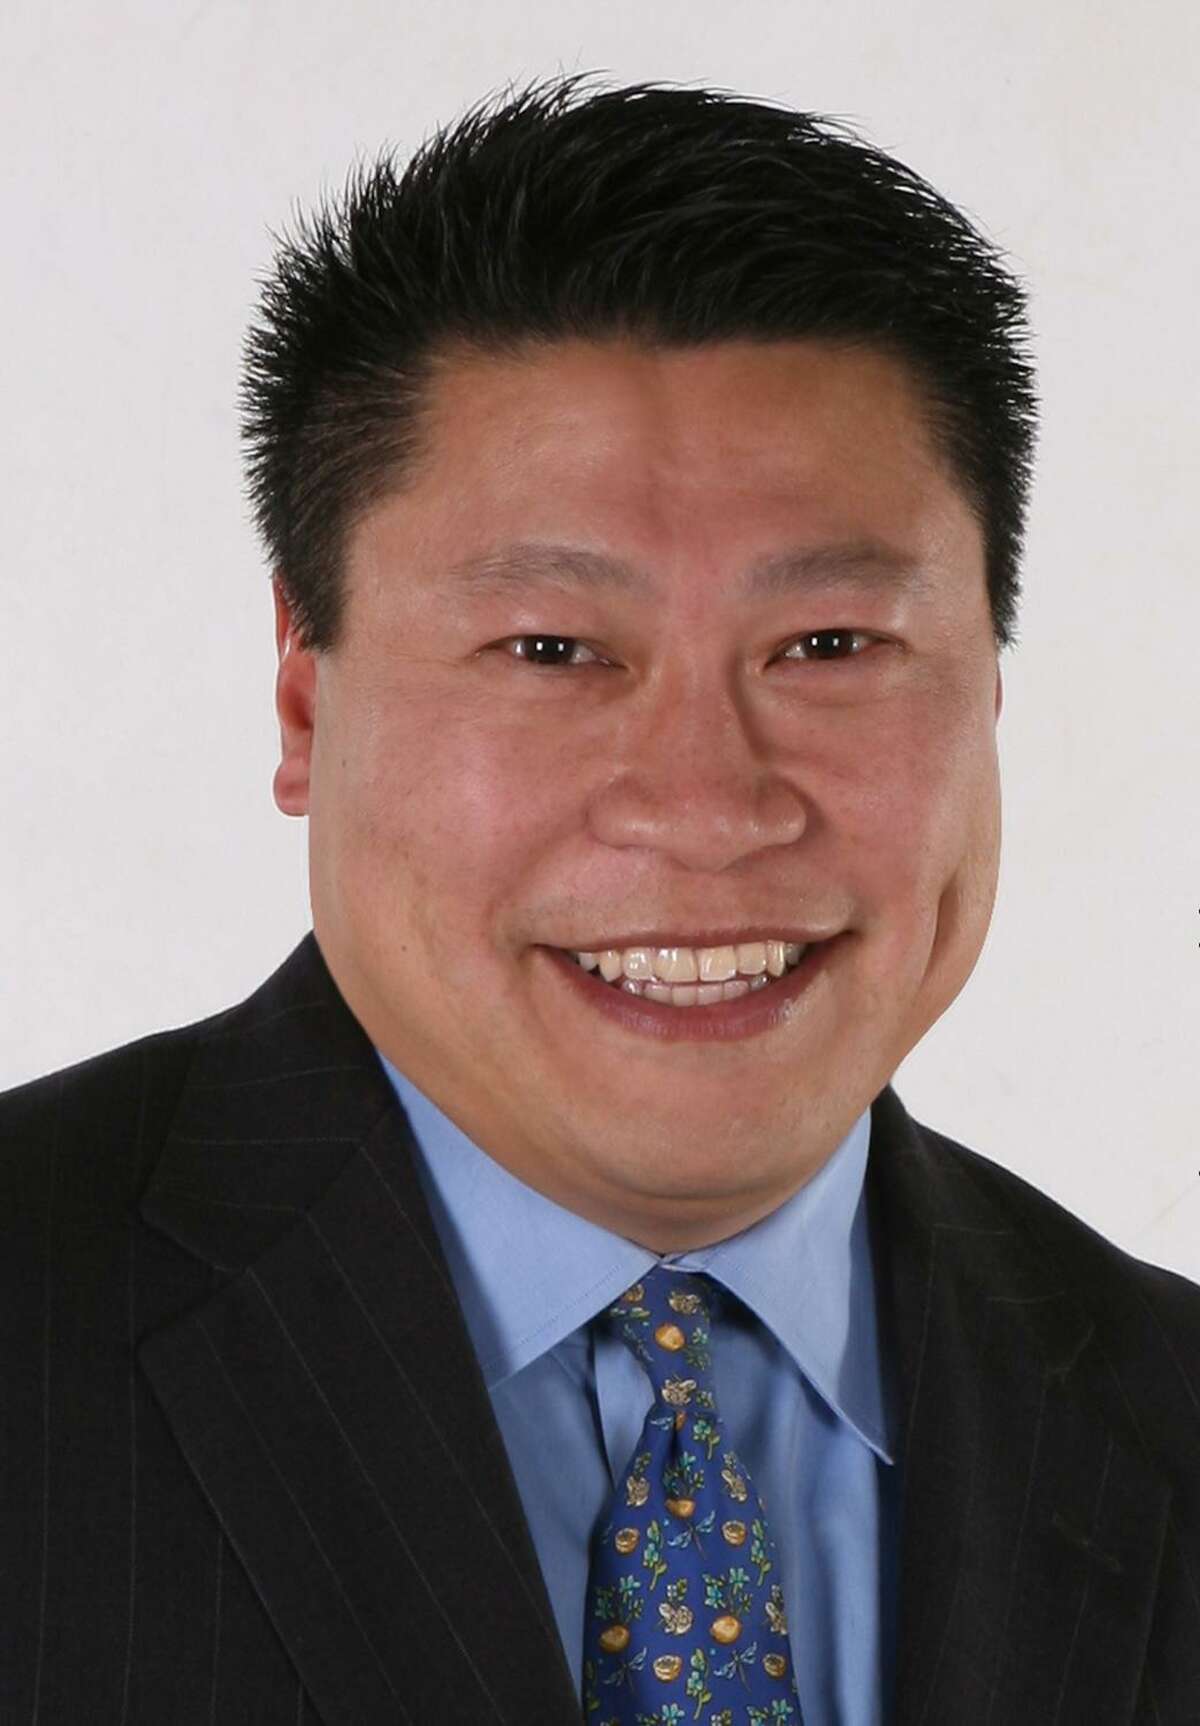 State Sen. Tony Hwang